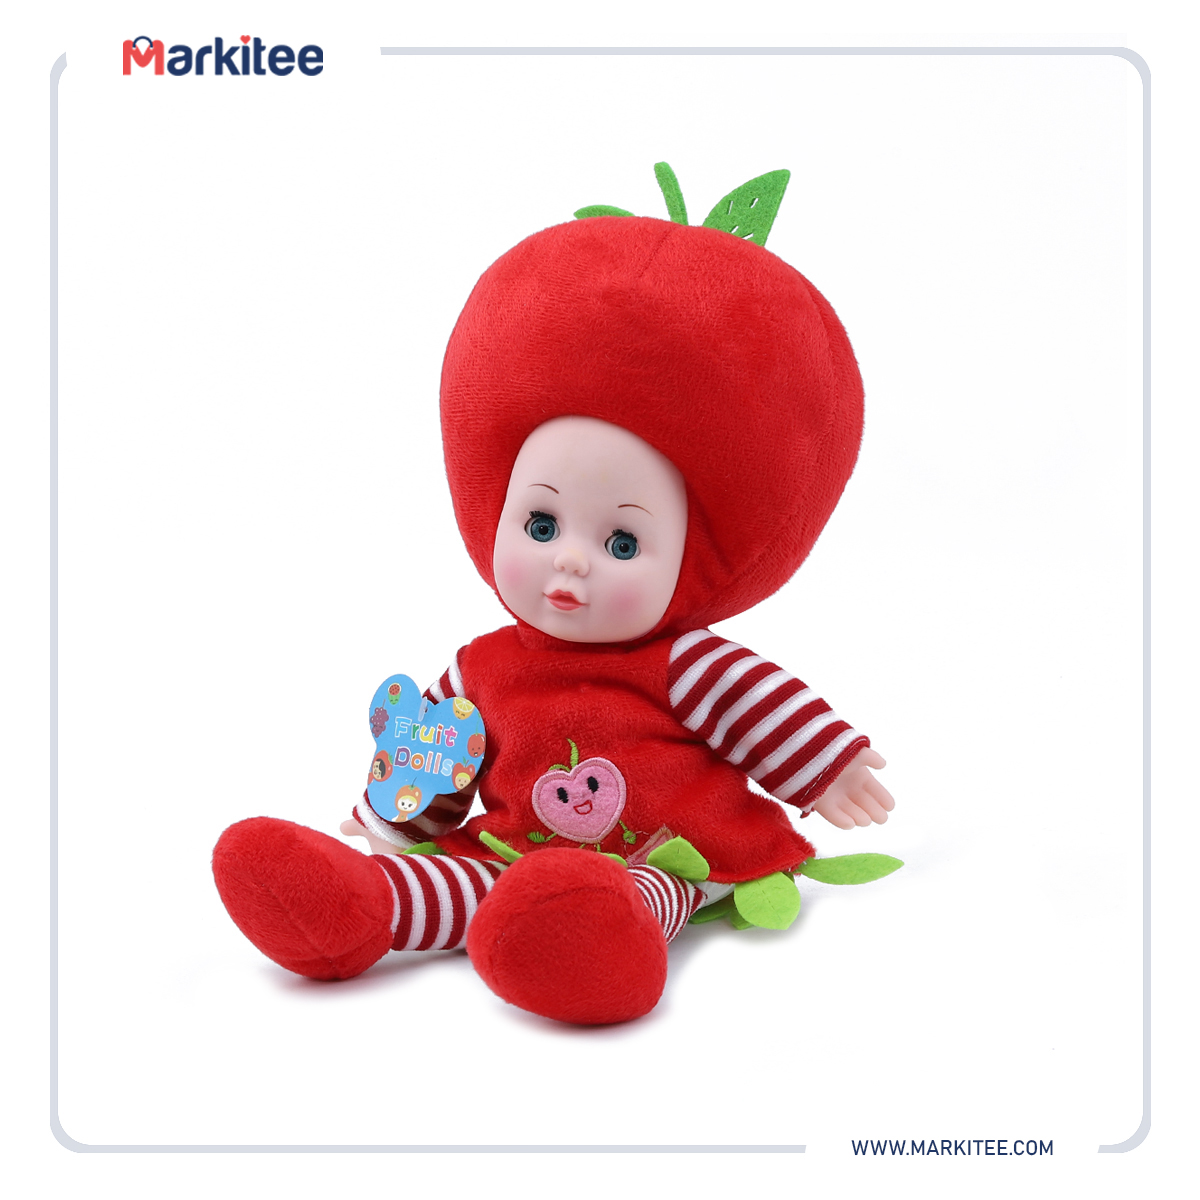 ماركيتي-markitee-20220625113333615_Markitee-toys-ty181-1(1).jpg